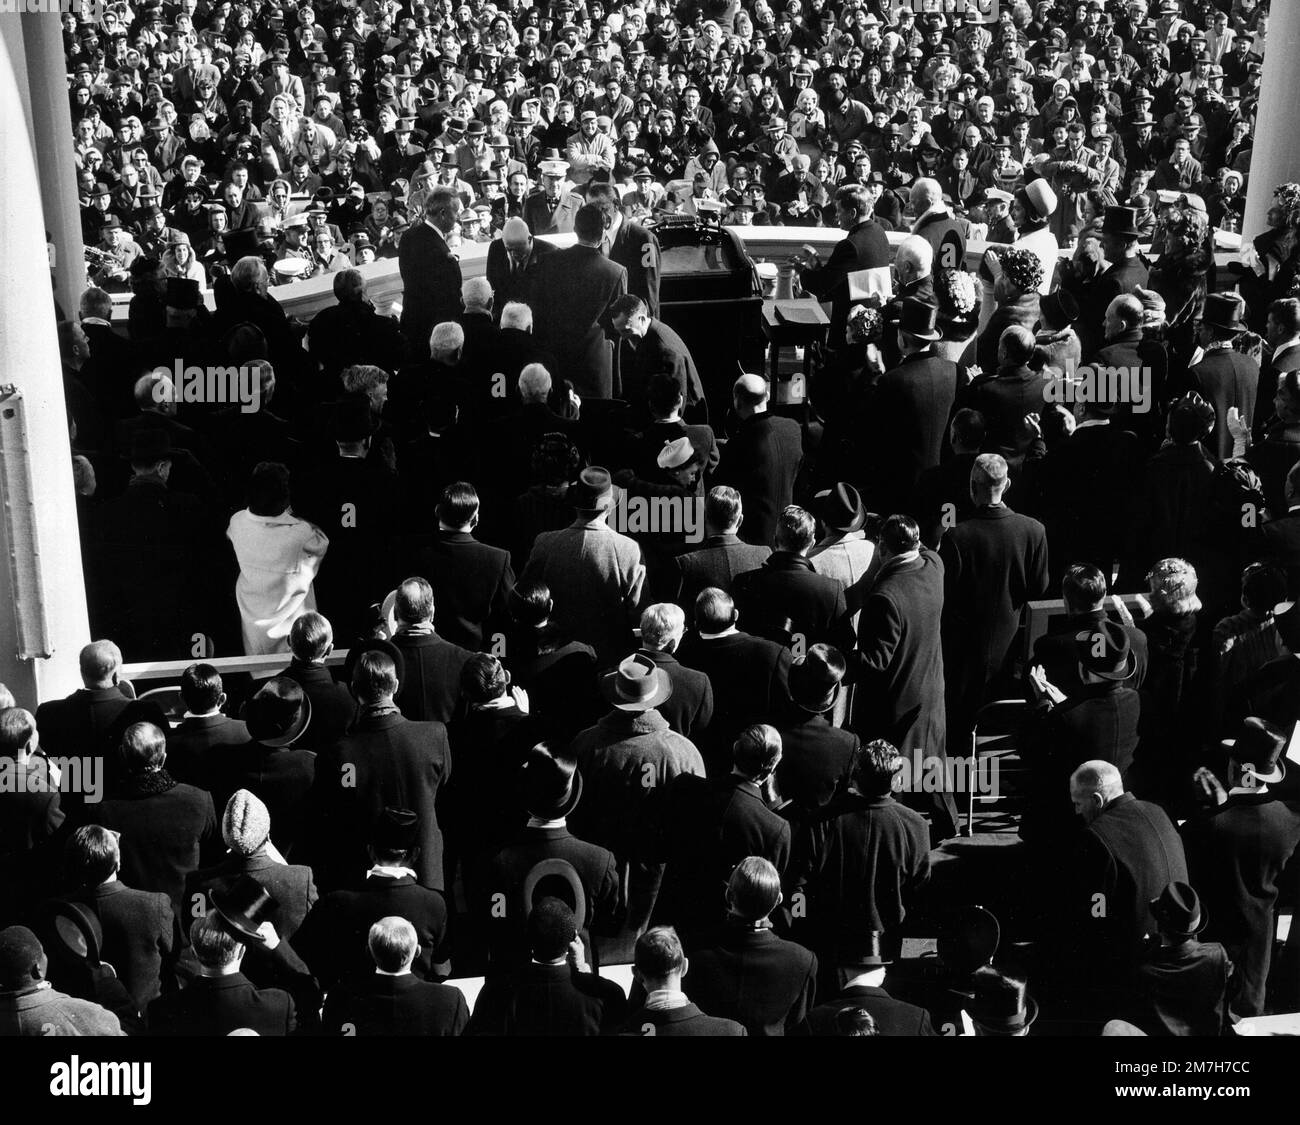 Eröffnungszeremonie der USA Präsident John F. Kennedy, umgeben von Menschenmengen, USA Capitol Building, Washington, D.C., USA, Architect of the Capitol, 20. Januar 1961 Stockfoto